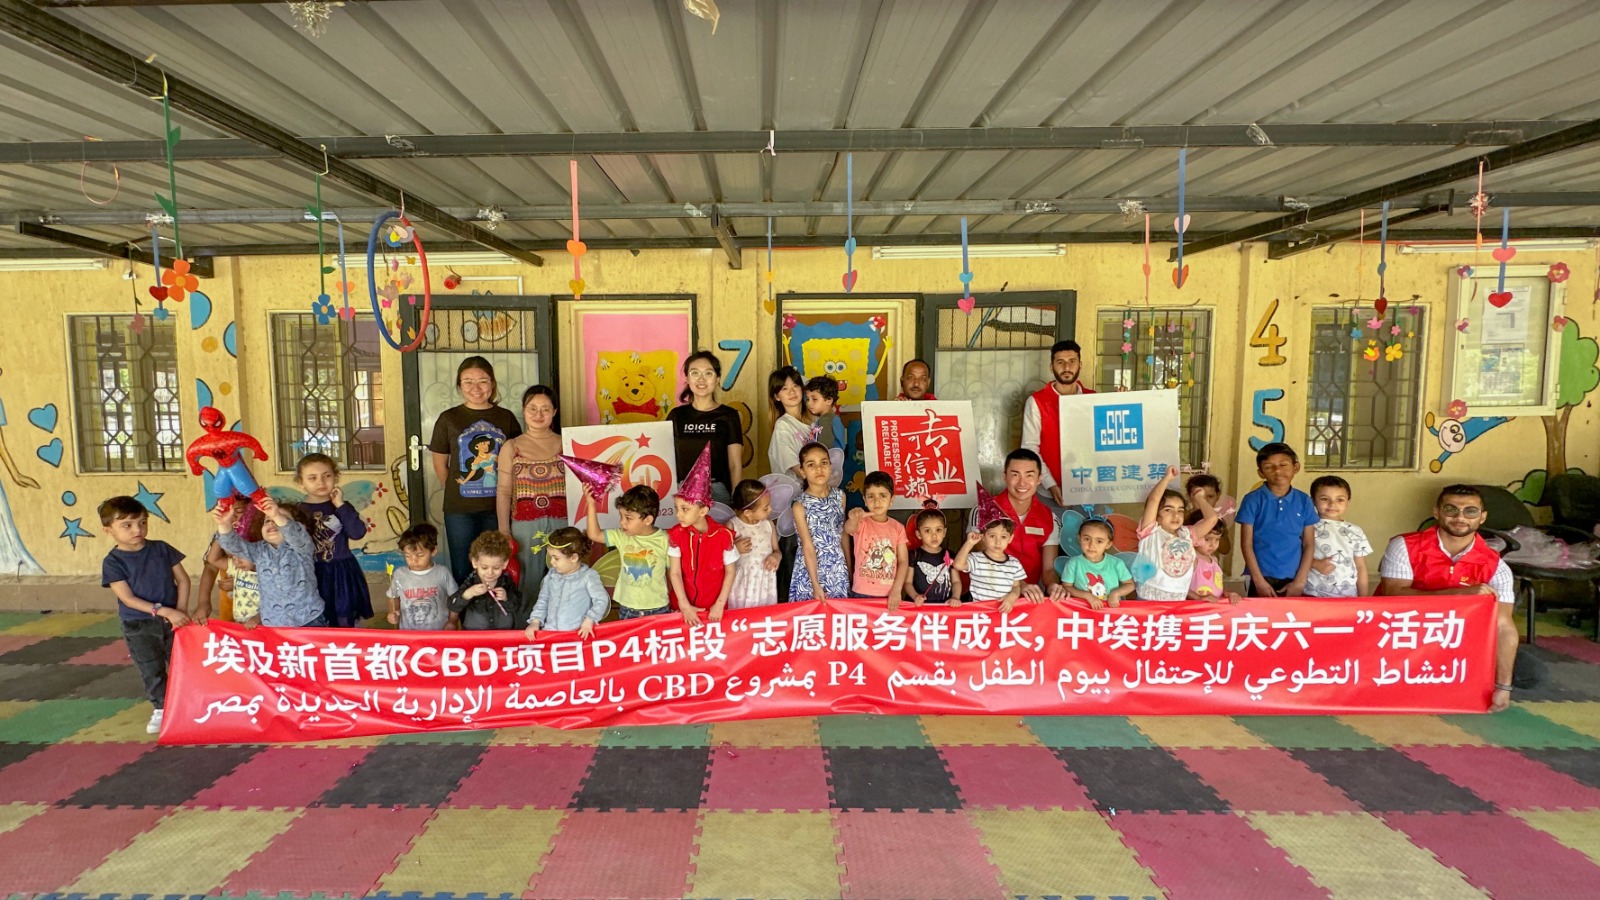 قسم P4 بالشركة الصينية العامة بمشروع CBD بالعاصمة يحتفل بيوم الطفل العالمي